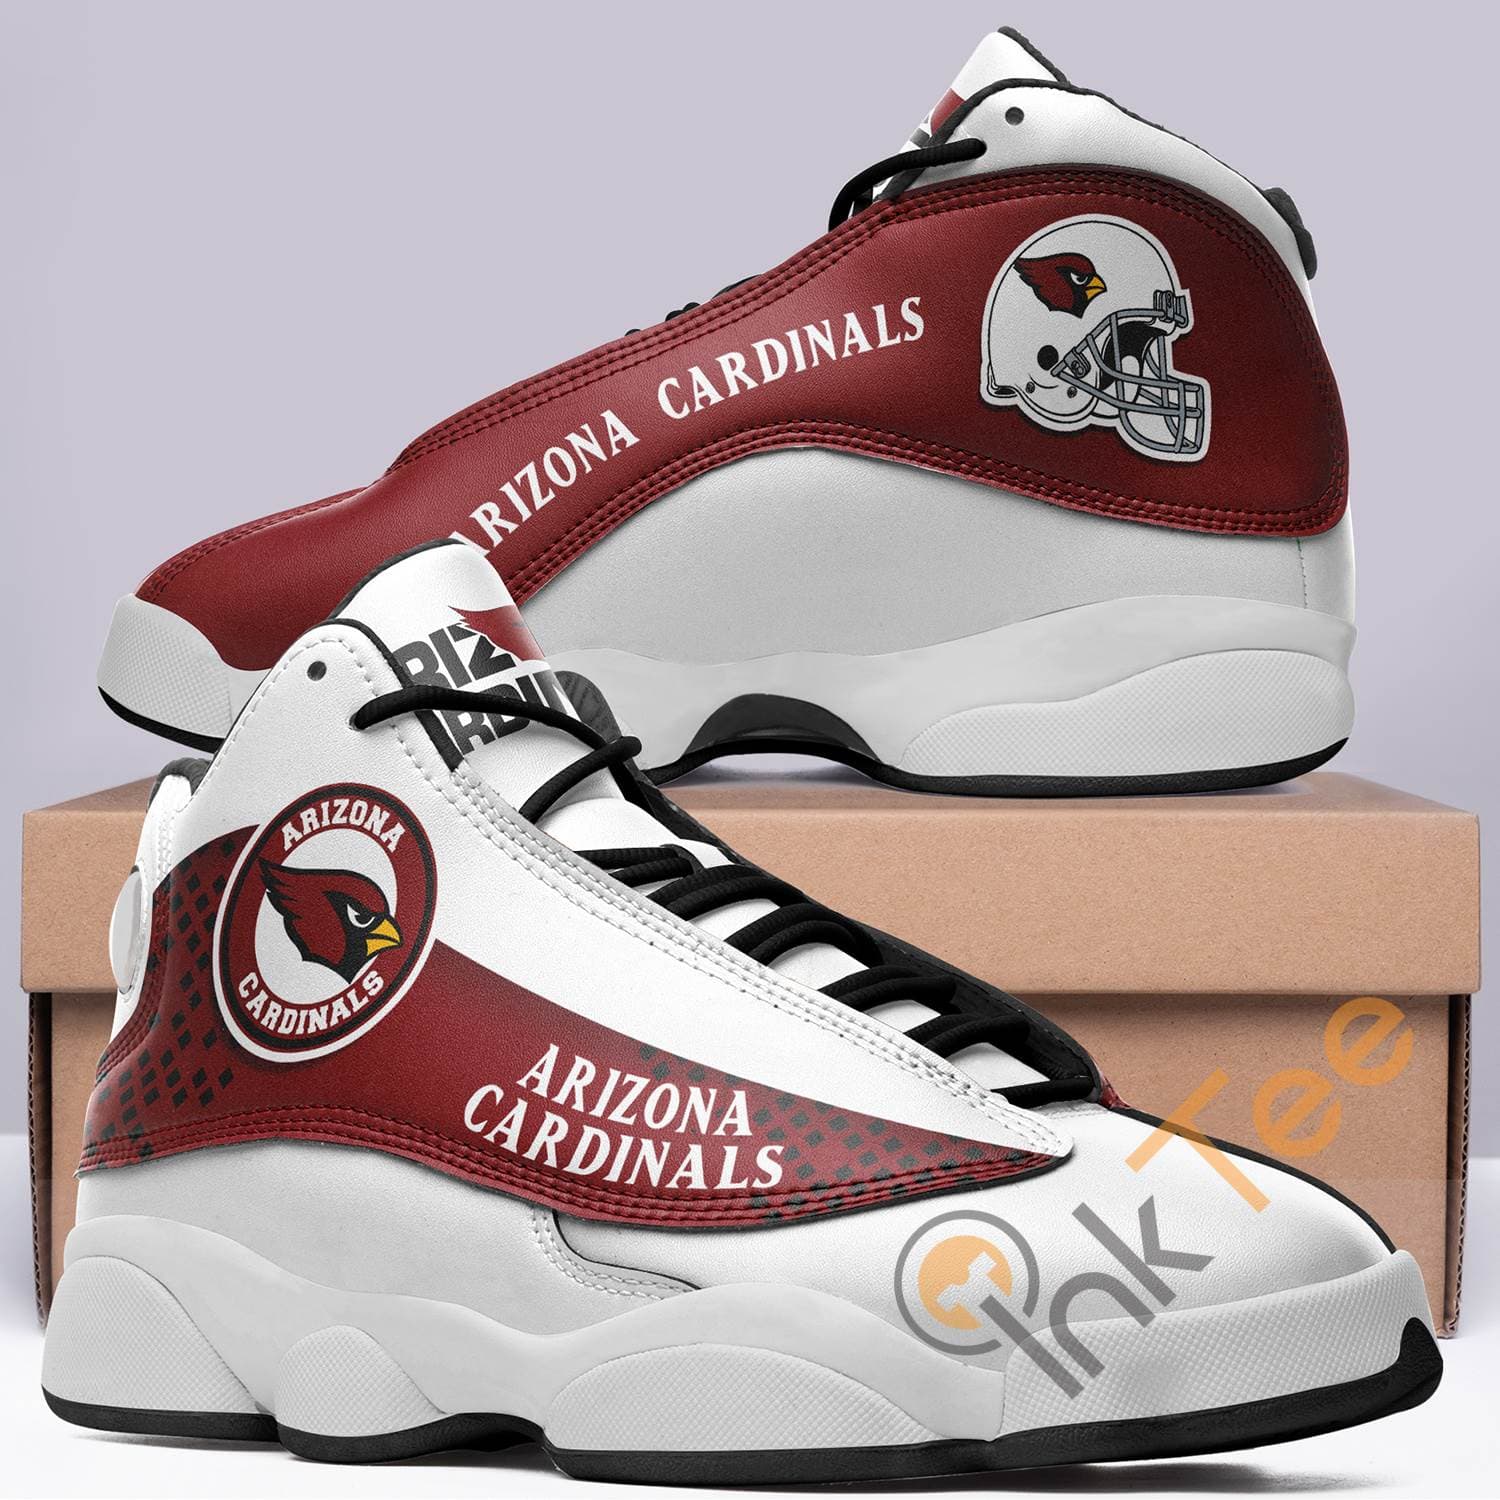 Arizona Cardinals Team Air Jordan Shoes